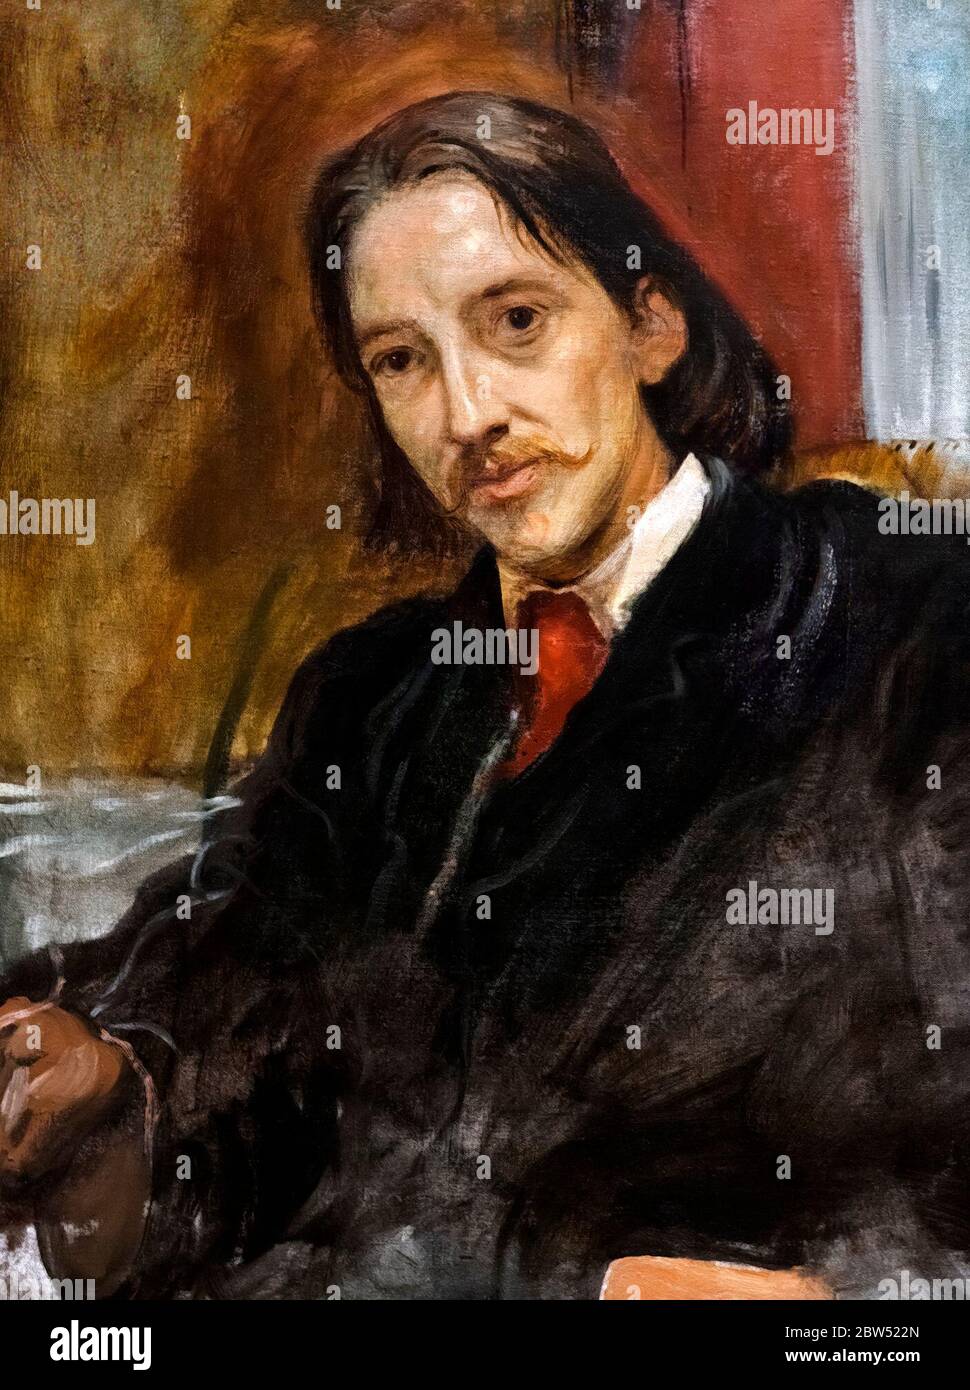 Robert Louis Stevenson. Portrait de l'écrivain écossais, Robert Louis Stevenson (1850-1894), par Sir William Blake Richmond, huile sur toile, 1887. Banque D'Images